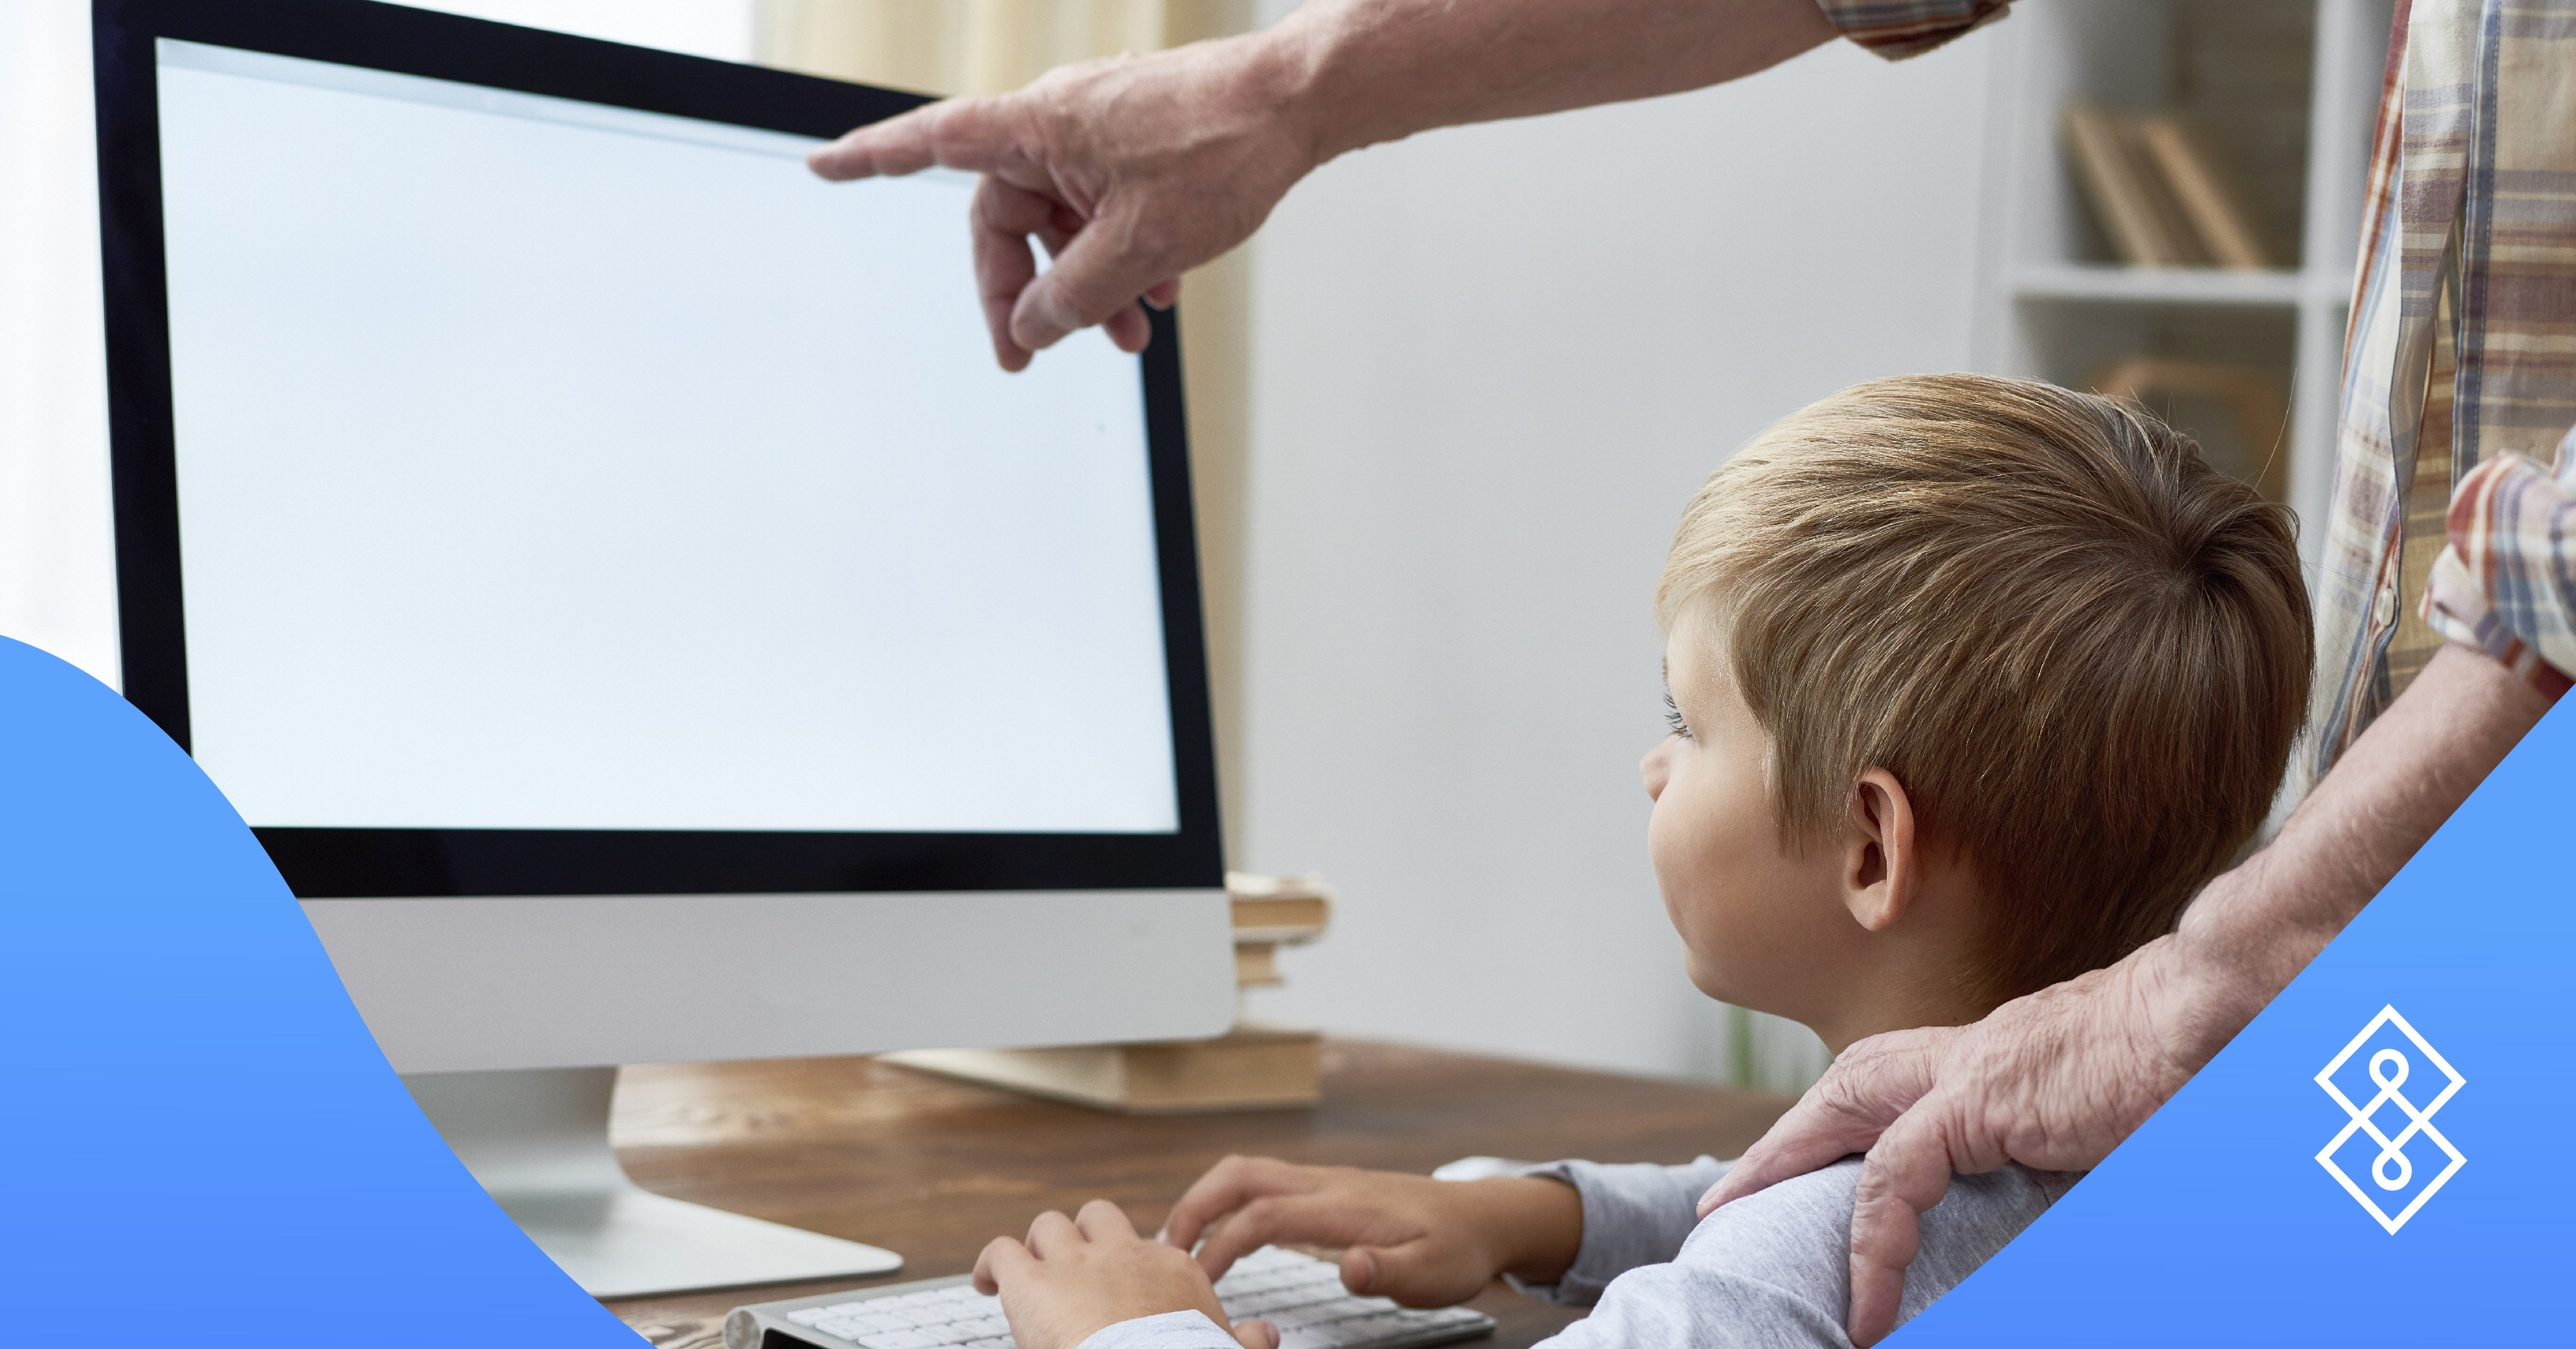 ¿Cómo puedo proteger a mis hijos en la era del internet?